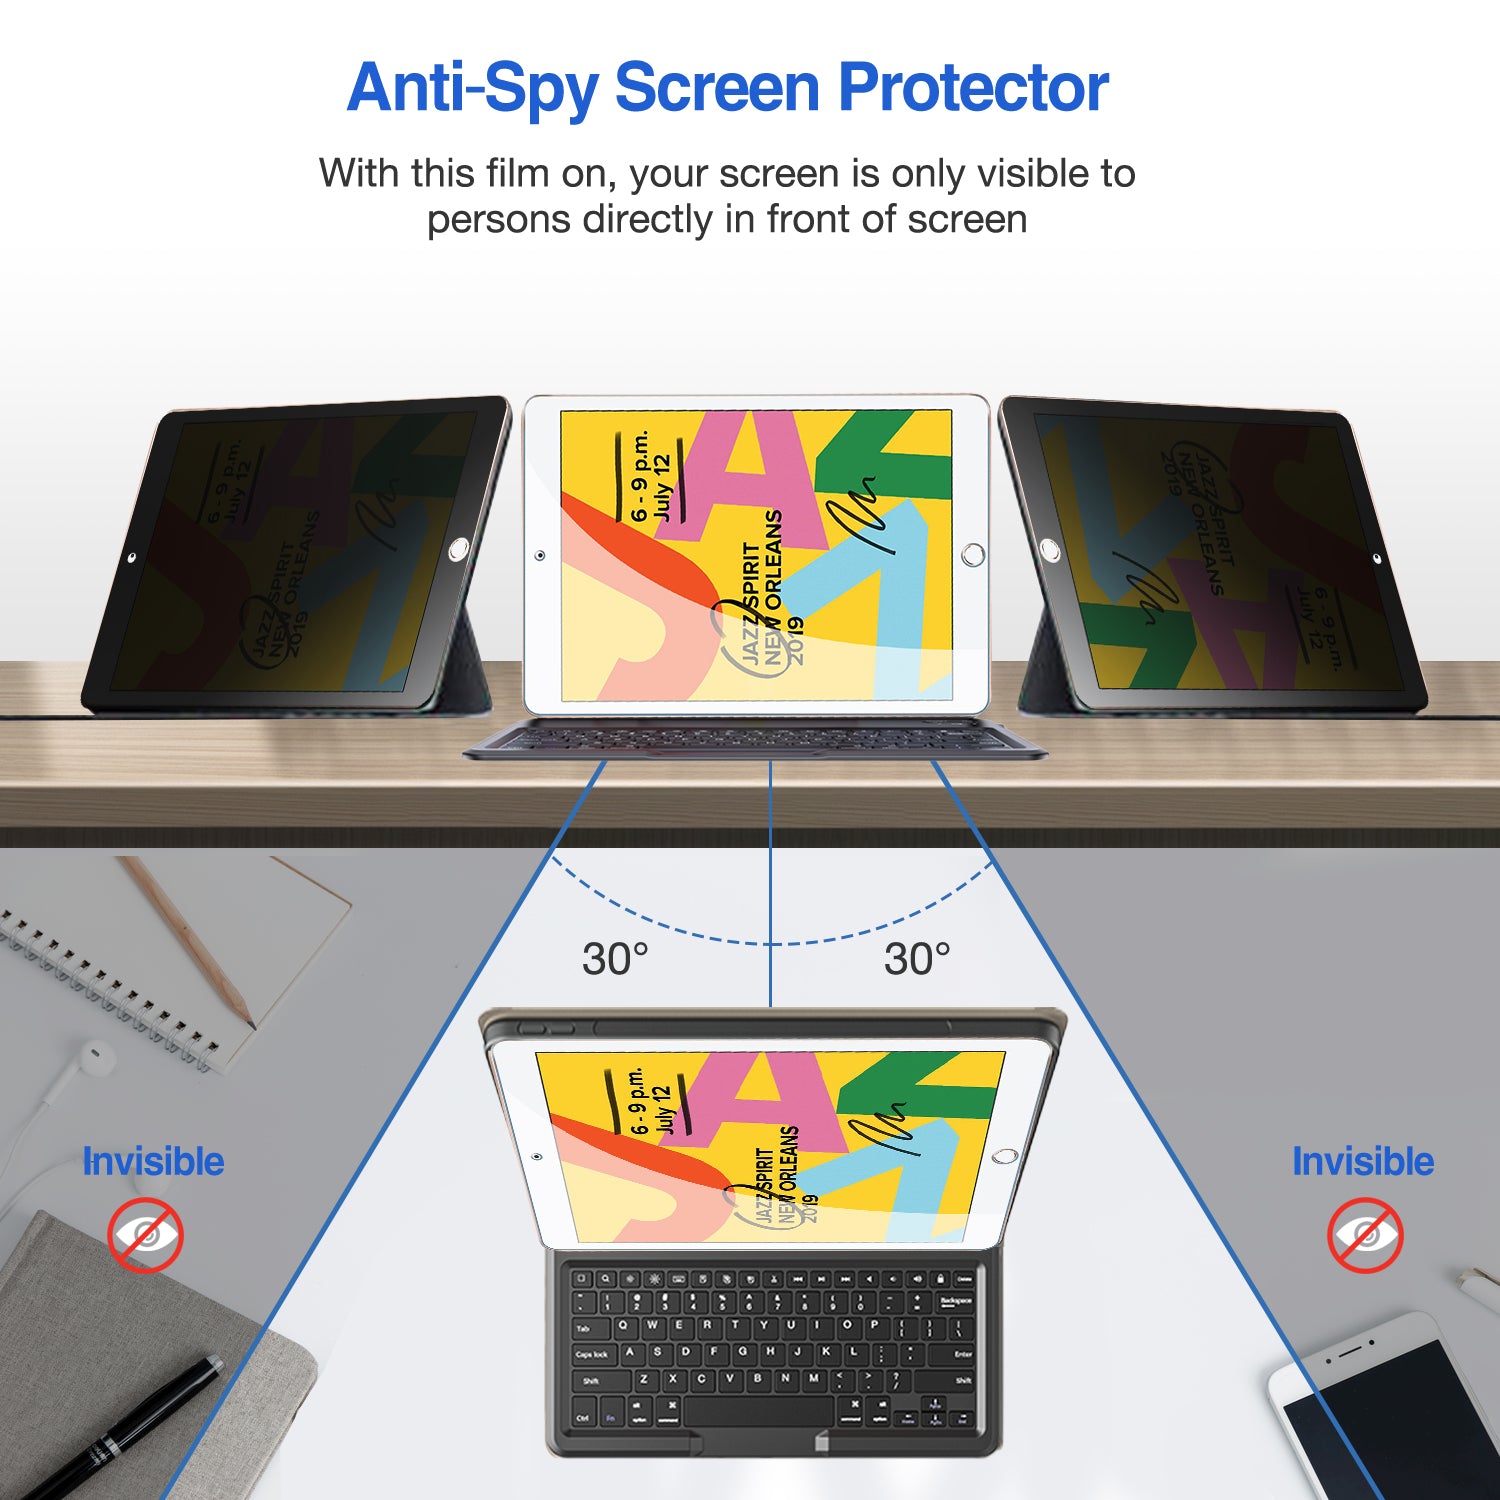 Pour iPad 10.2 2019 WIWU iPaper Protect Film de protection d'écran en papier